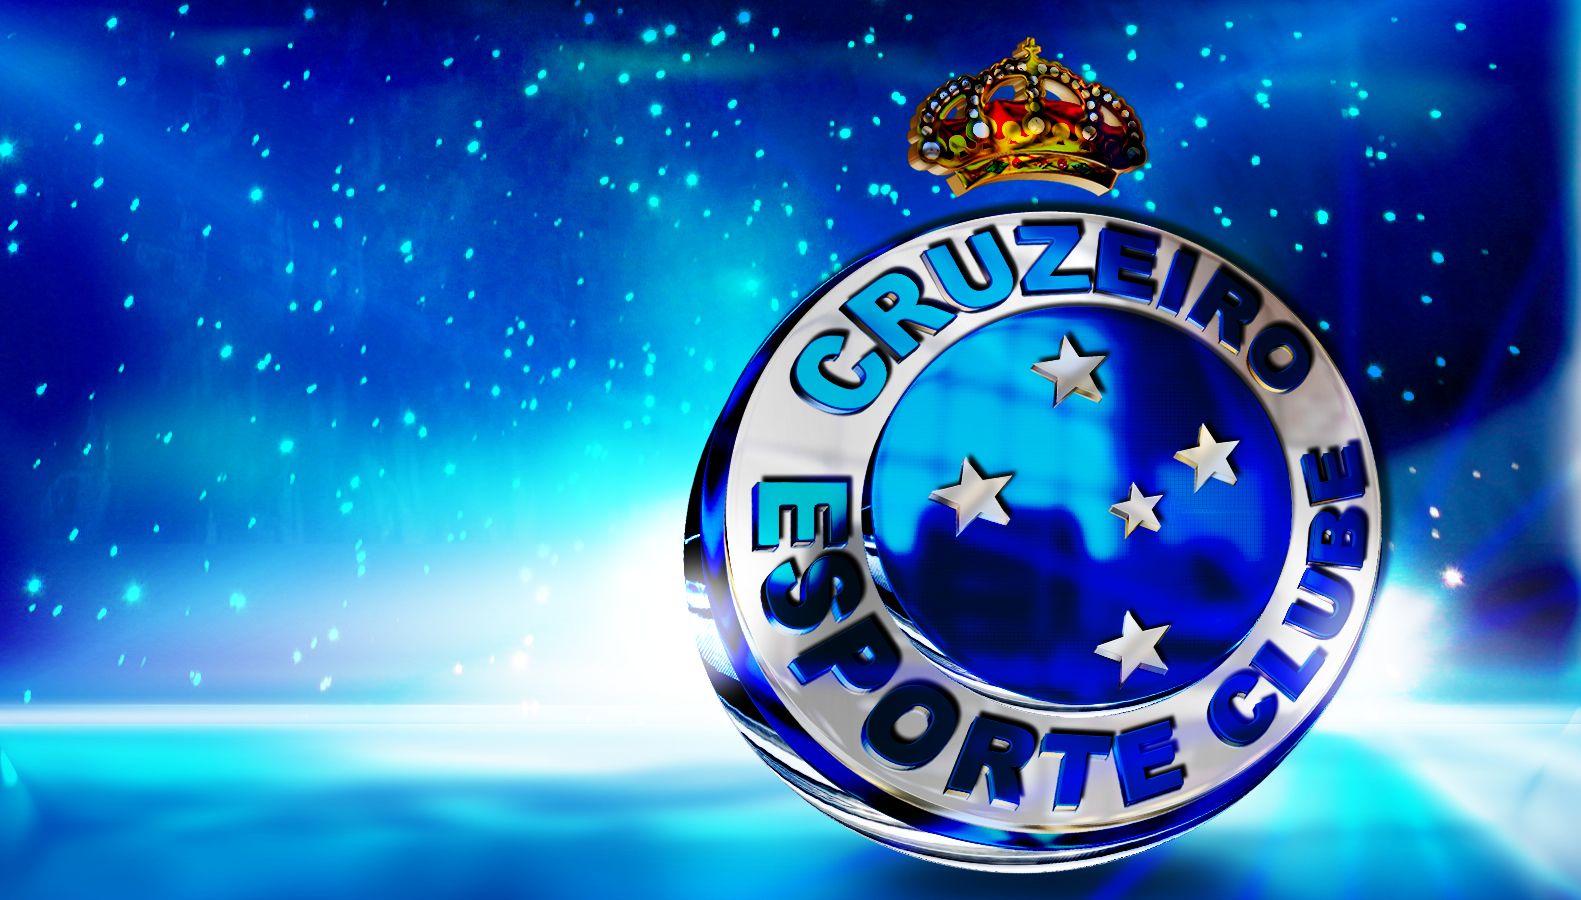 Cruzeiro Esporte Clube Wallpapers Top Free Cruzeiro Esporte Clube